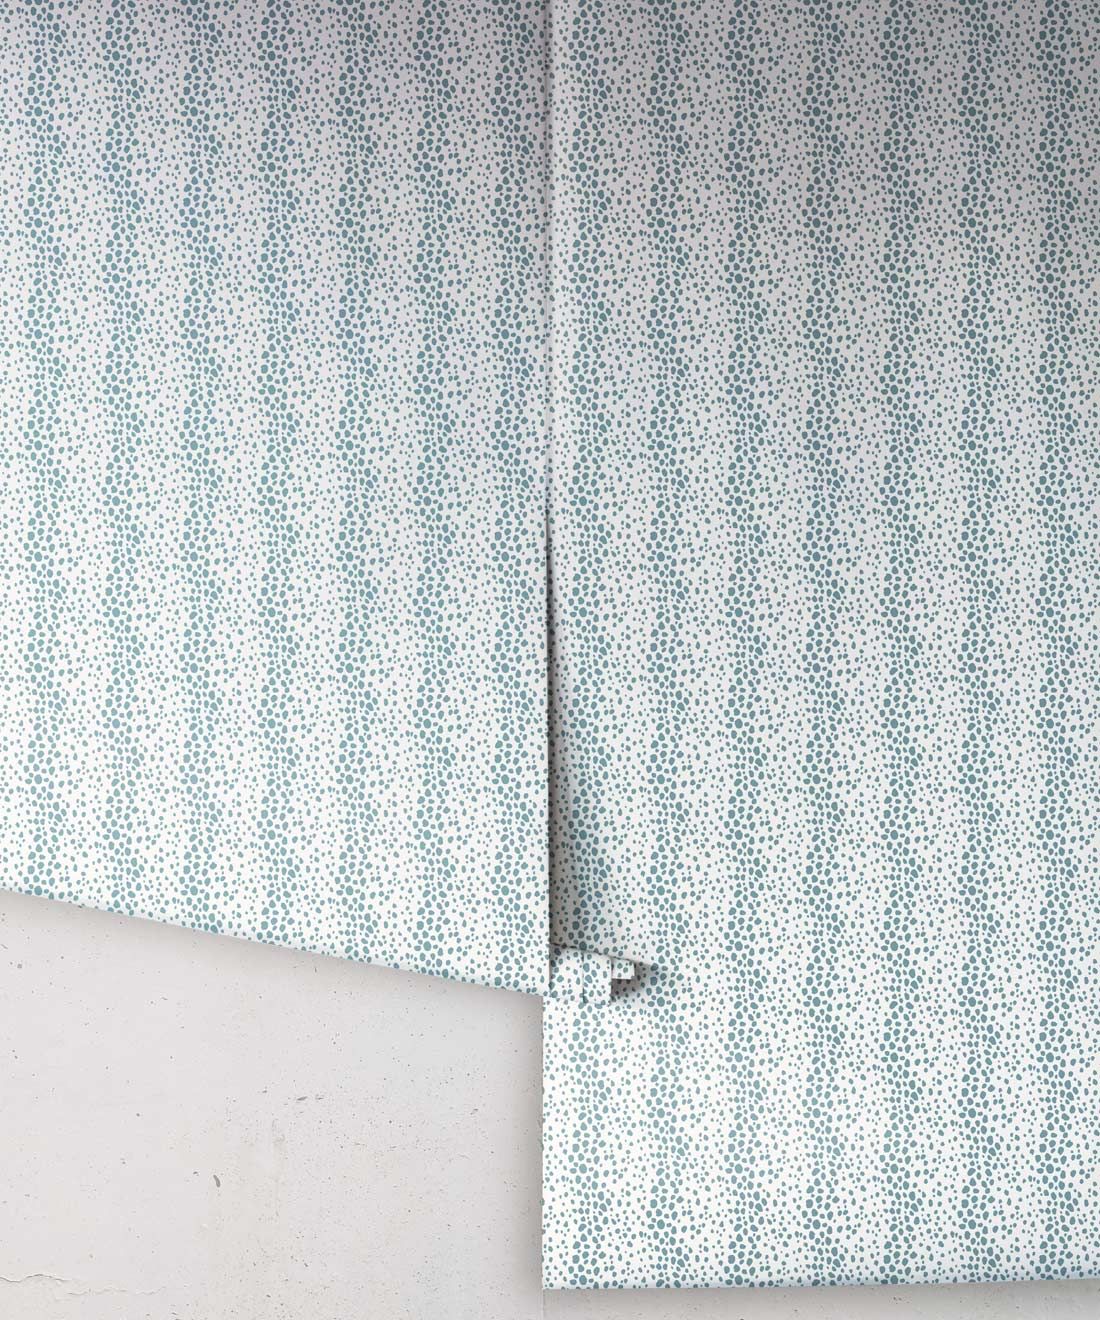 Park Avenue Petite Wallpaper • Dianne Bergeron • Animal Print Wallpaper • Animal Spots Wallpaper • Sea Glass • Roll